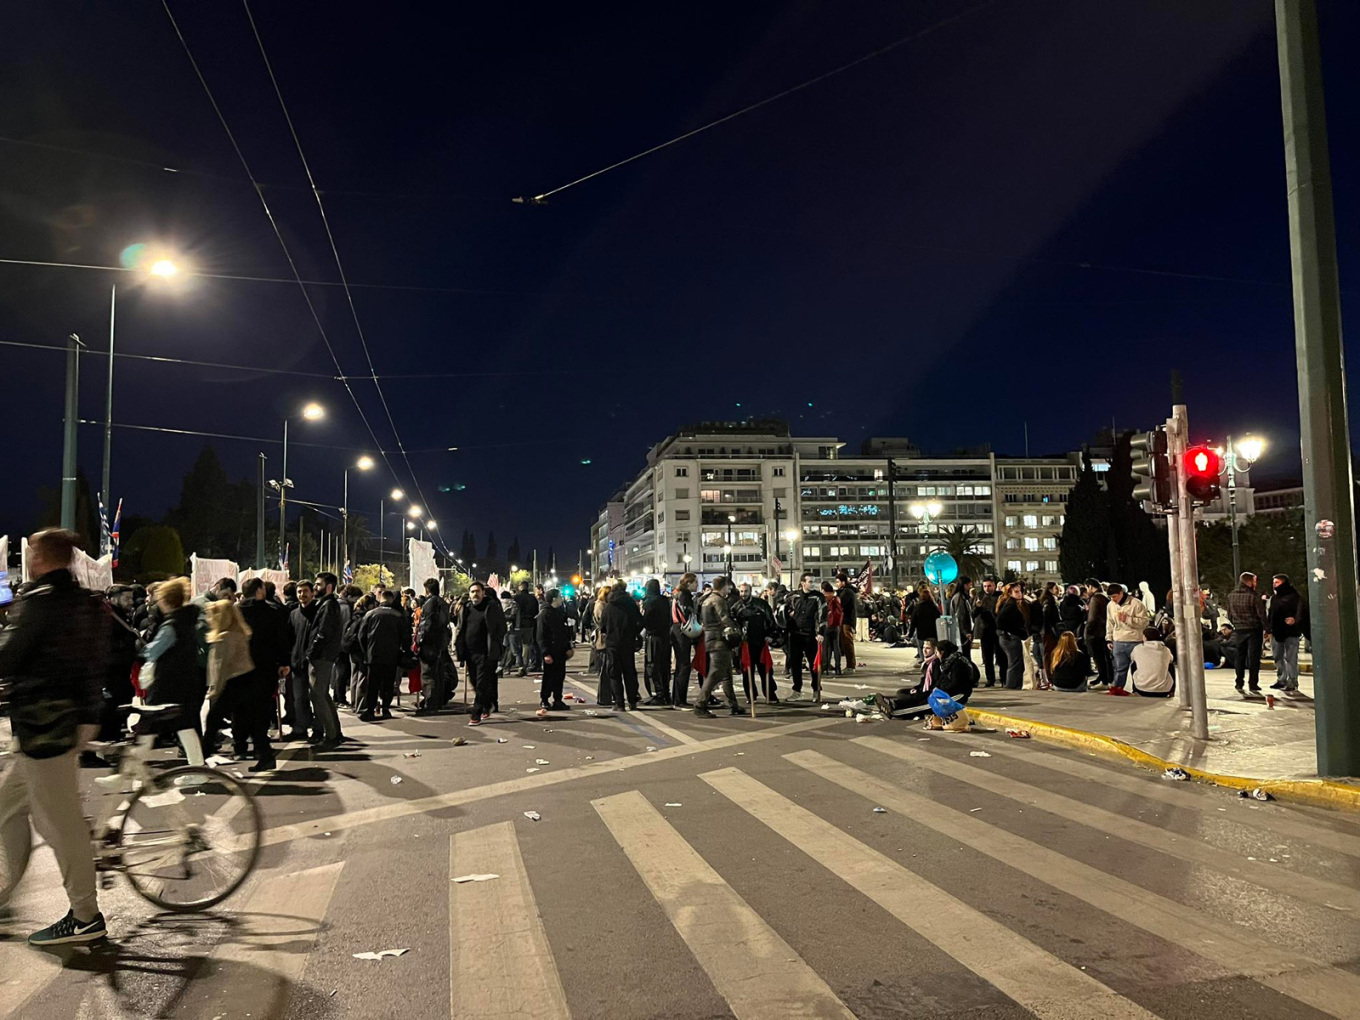 https://www.lykavitos.gr/news/greece/neos-gyros-epeisodion-sto-syntagma